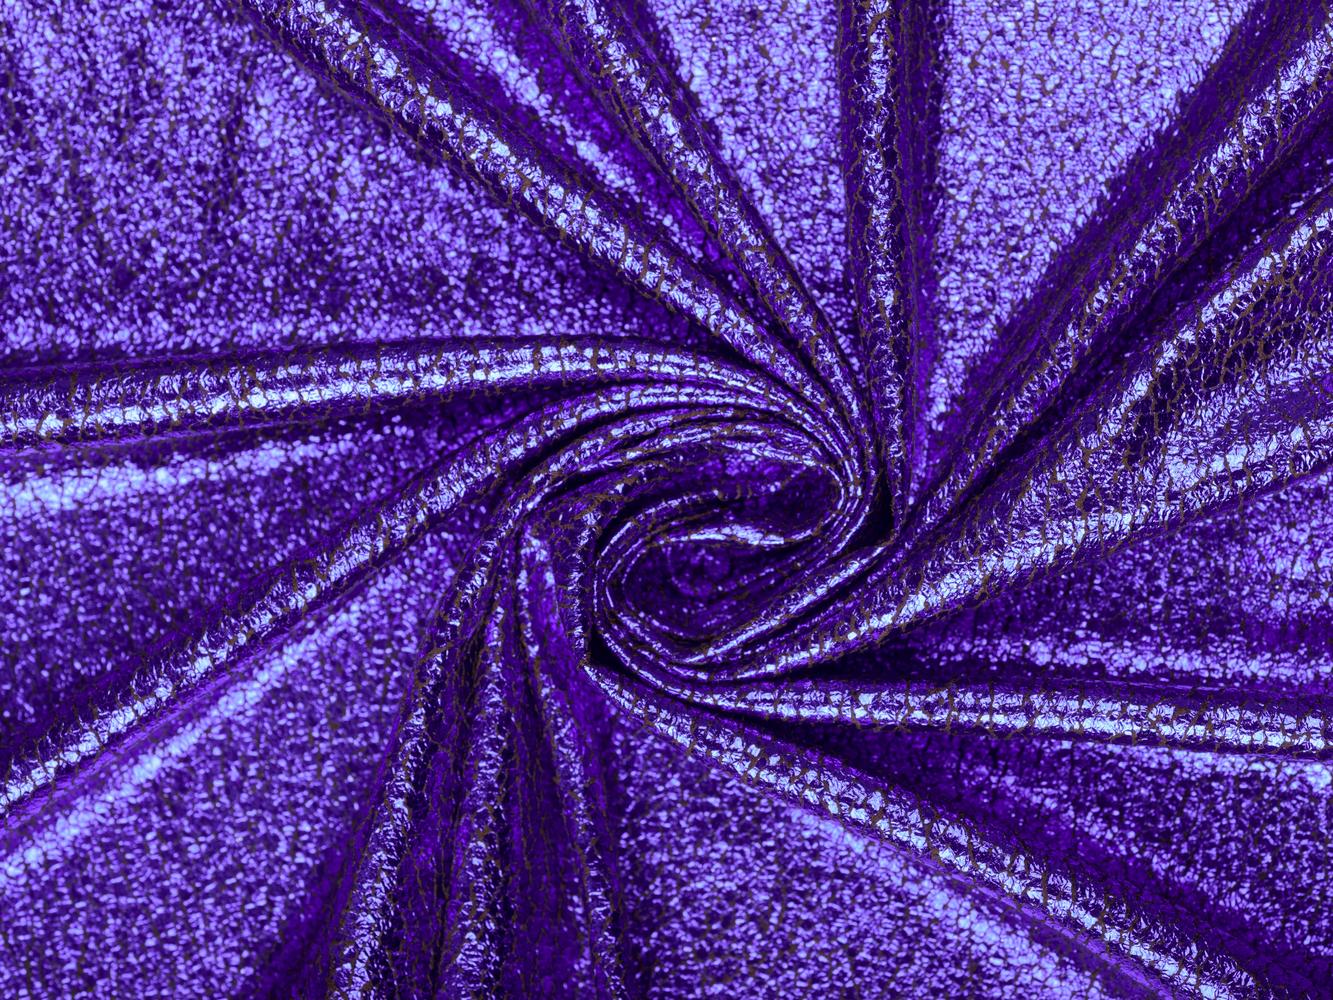 Плательная ткань с фиолетовым напылением